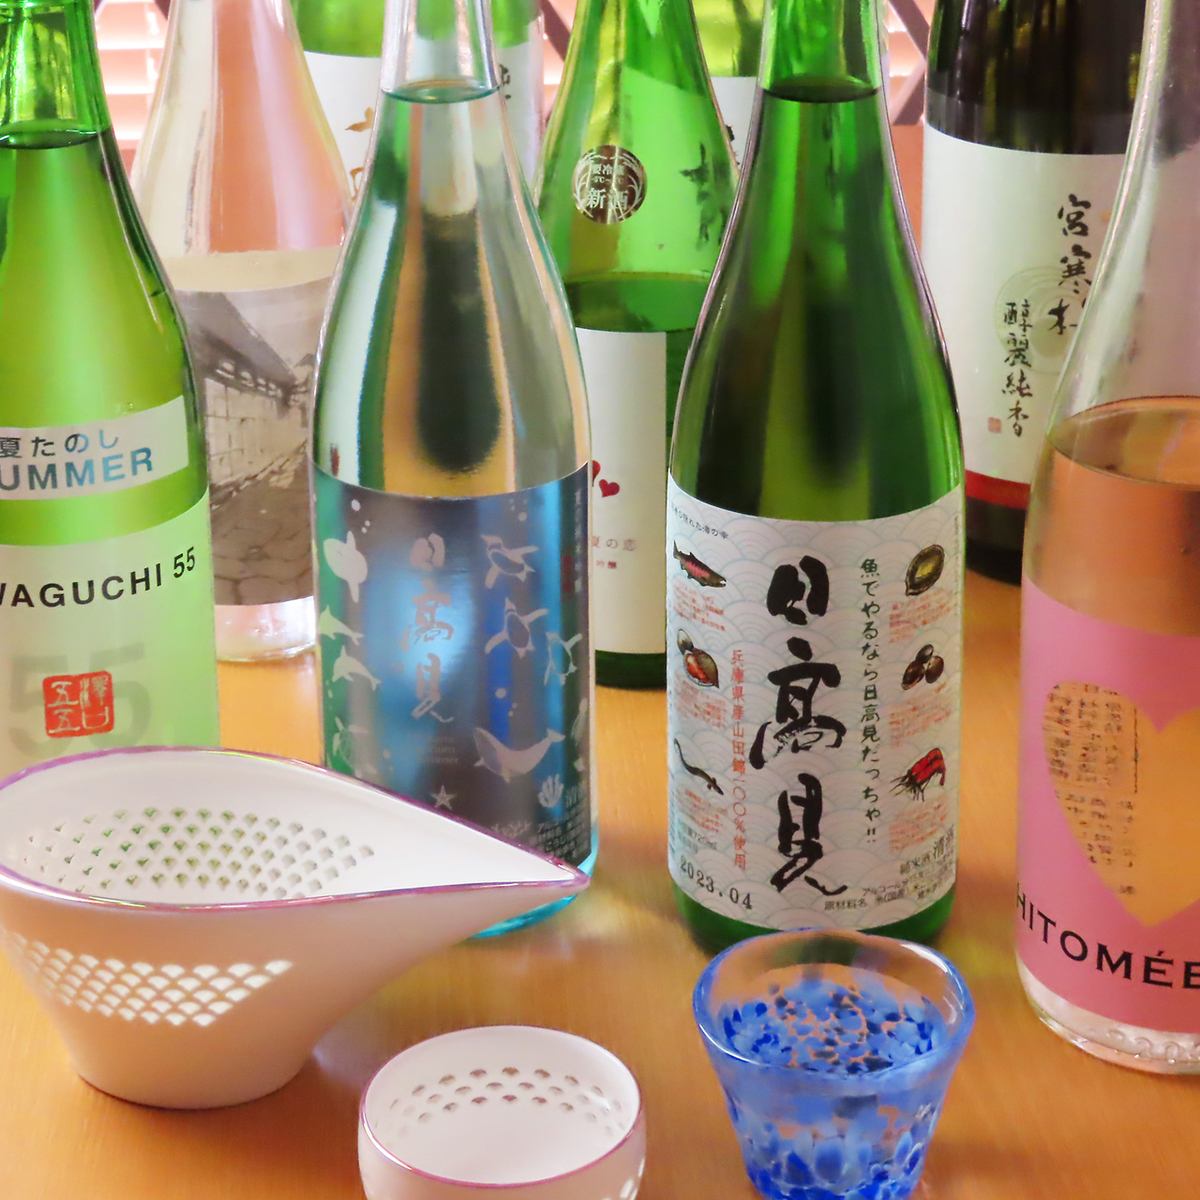 请与日本酒或烧酒一起享用我们的特色菜肴。